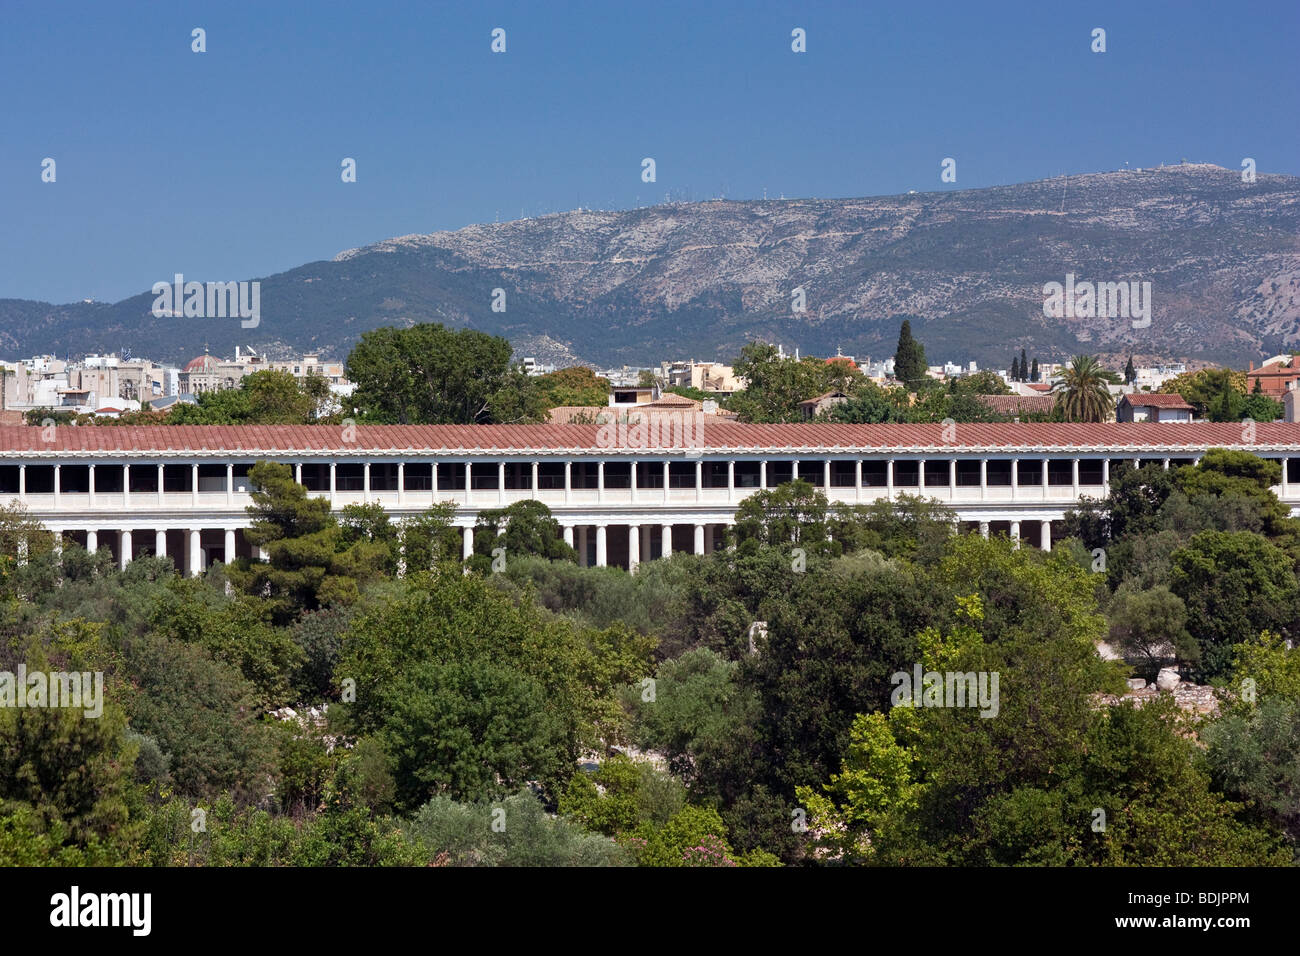 La Stoa d'Attalos, qui abrite le Musée de l'Agora, dans l'Agora antique d'Athènes, Grèce. Banque D'Images